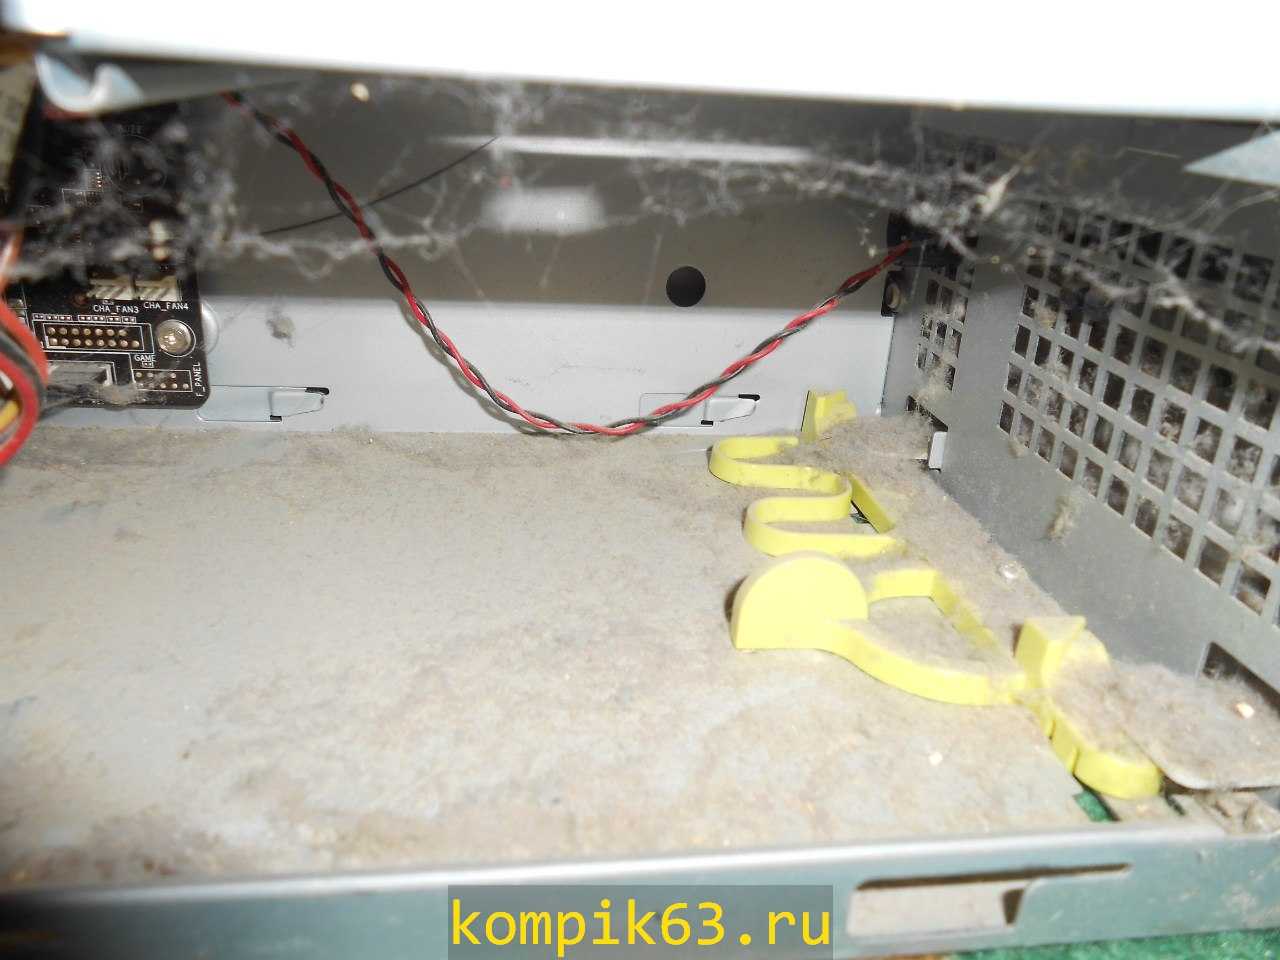 kompik63.ru-082